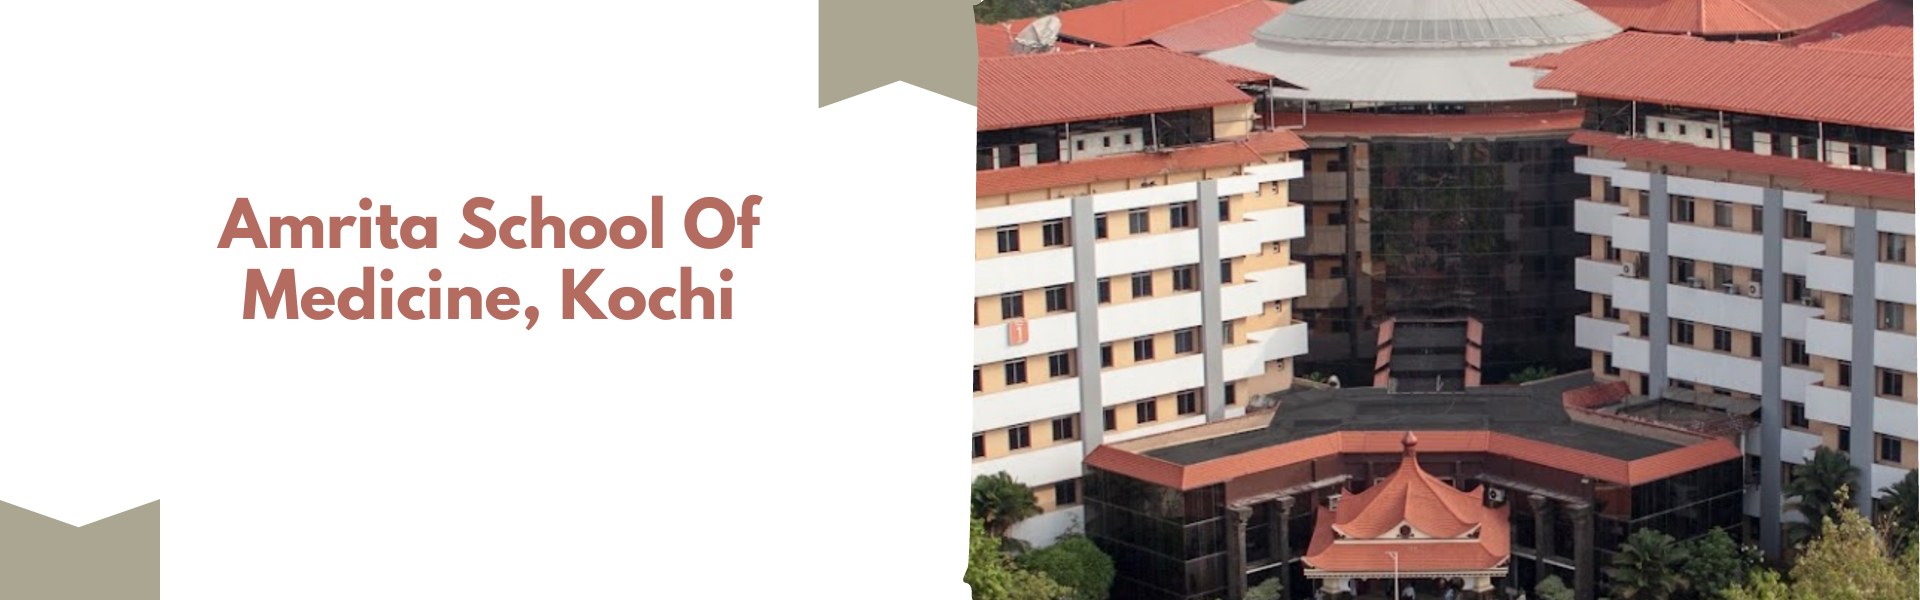 Amrita School Of Medicine, Kochi